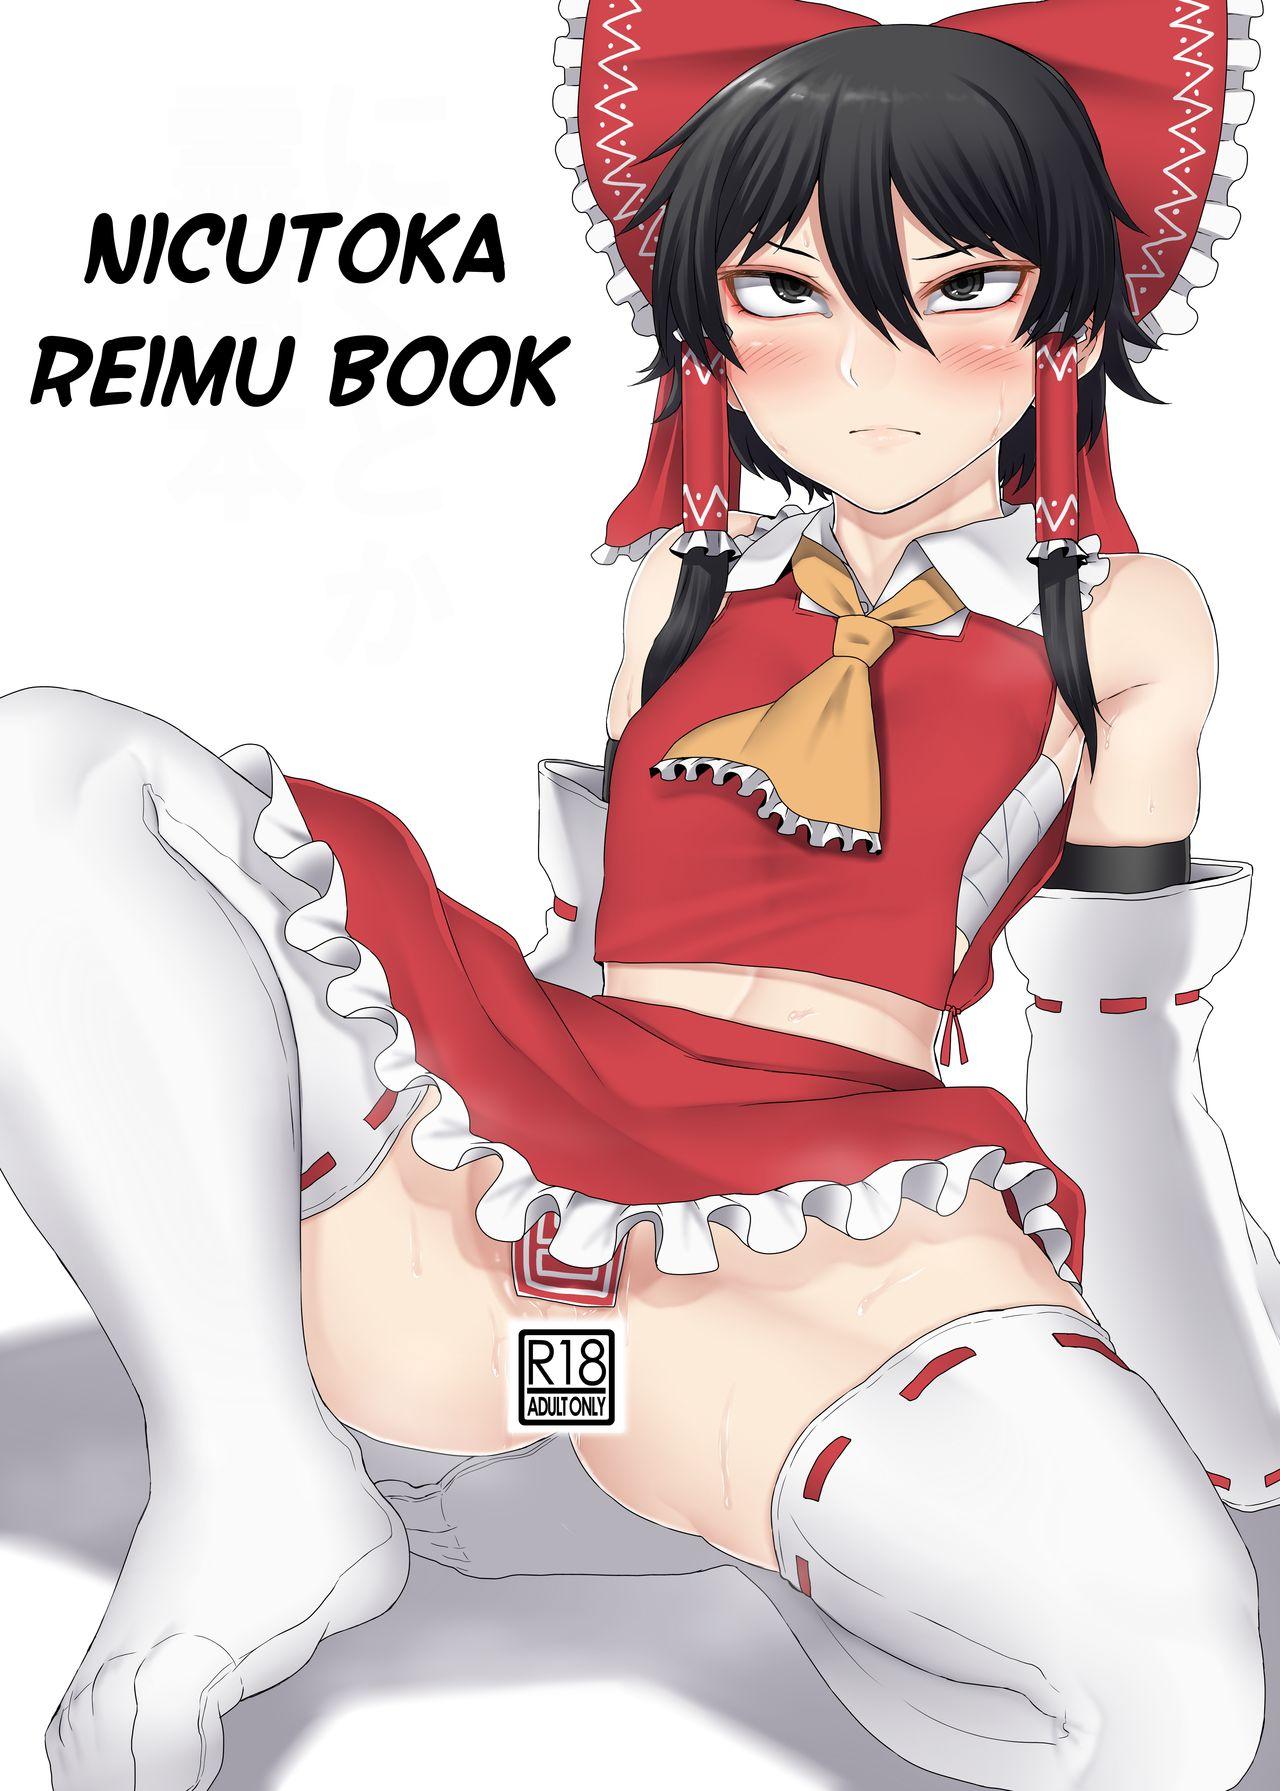 Nicutoka Reimu Bon | Nicutoka Reimu Book 0